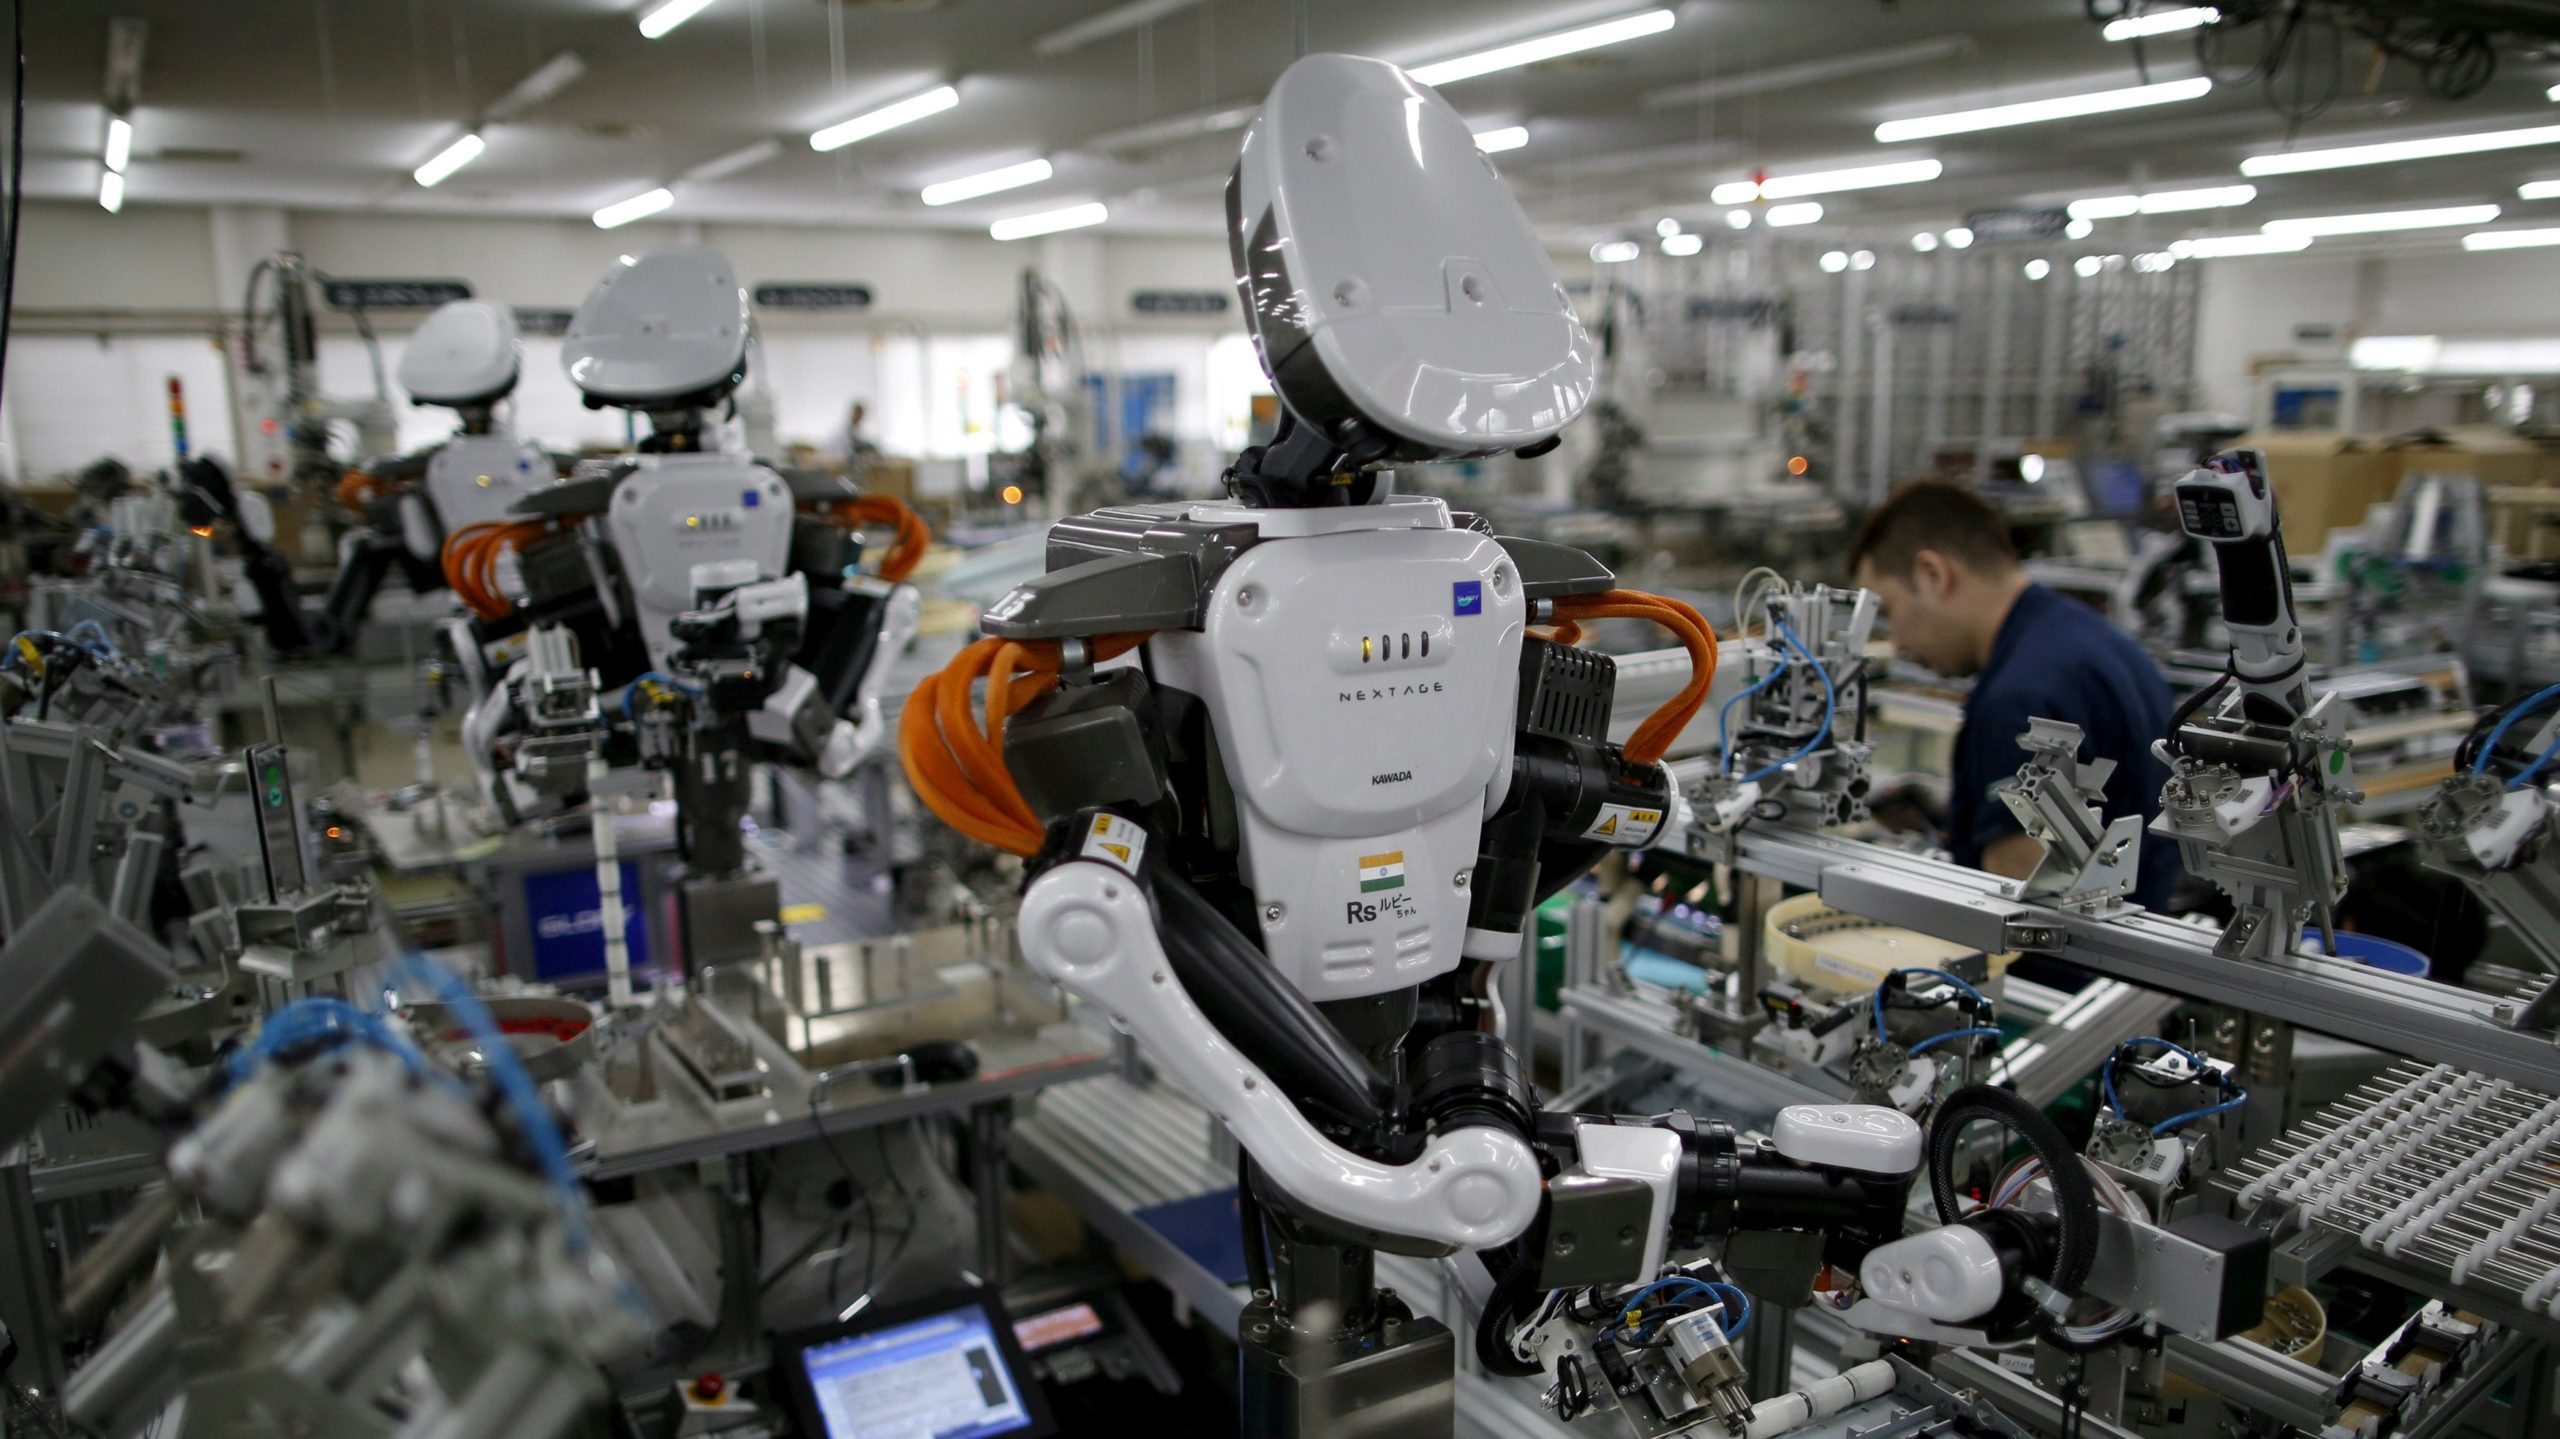 korn Lee pen Skaber eller ødelægger robotter jobs? - Kunstig intelligens og robotter